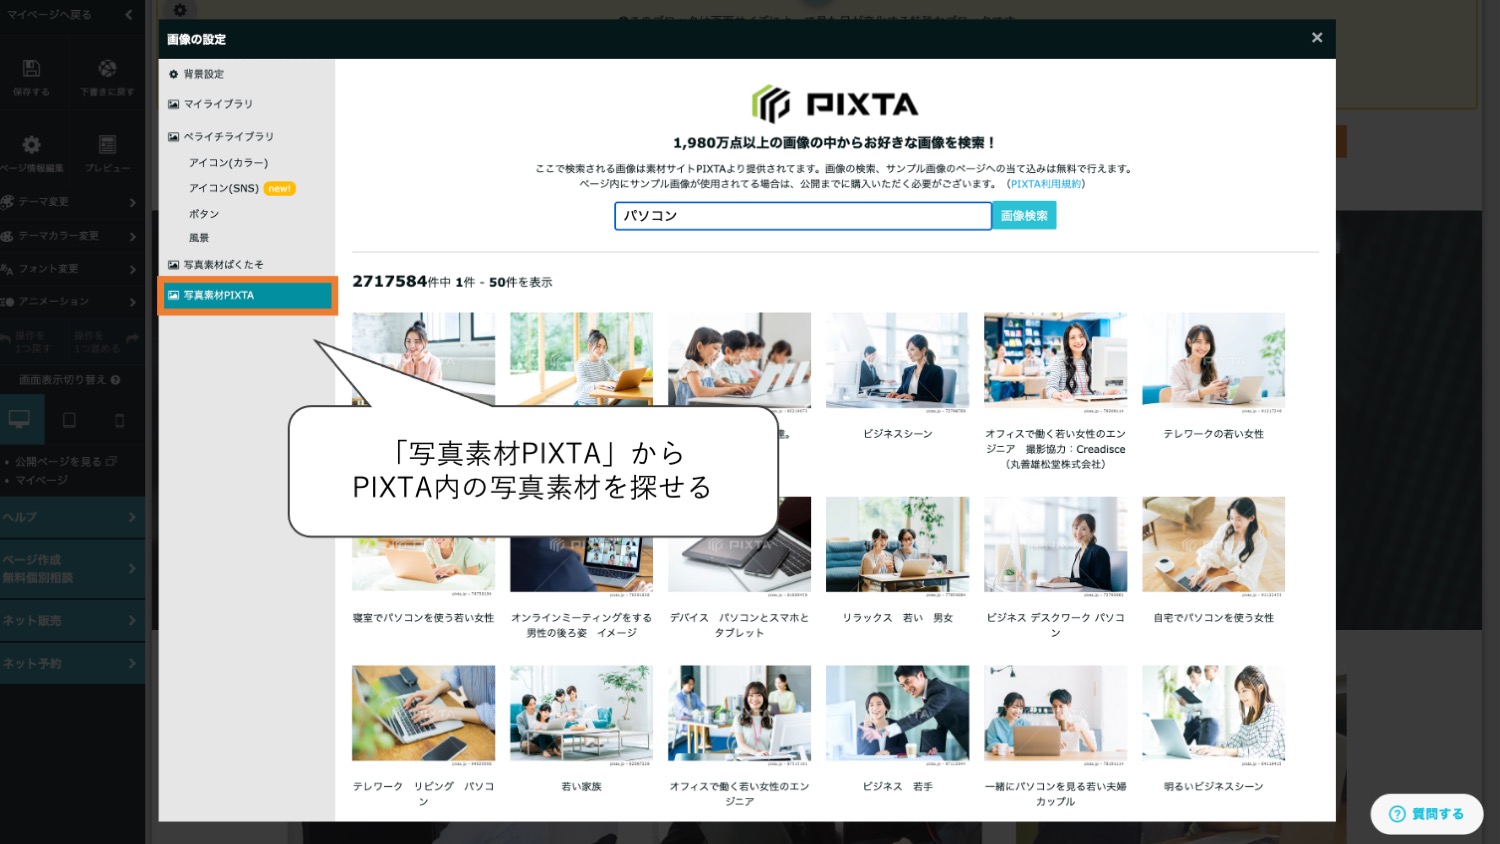 ペライチ上でPIXTAの画像の検索やサンプル画像の当て込み、購入ができる